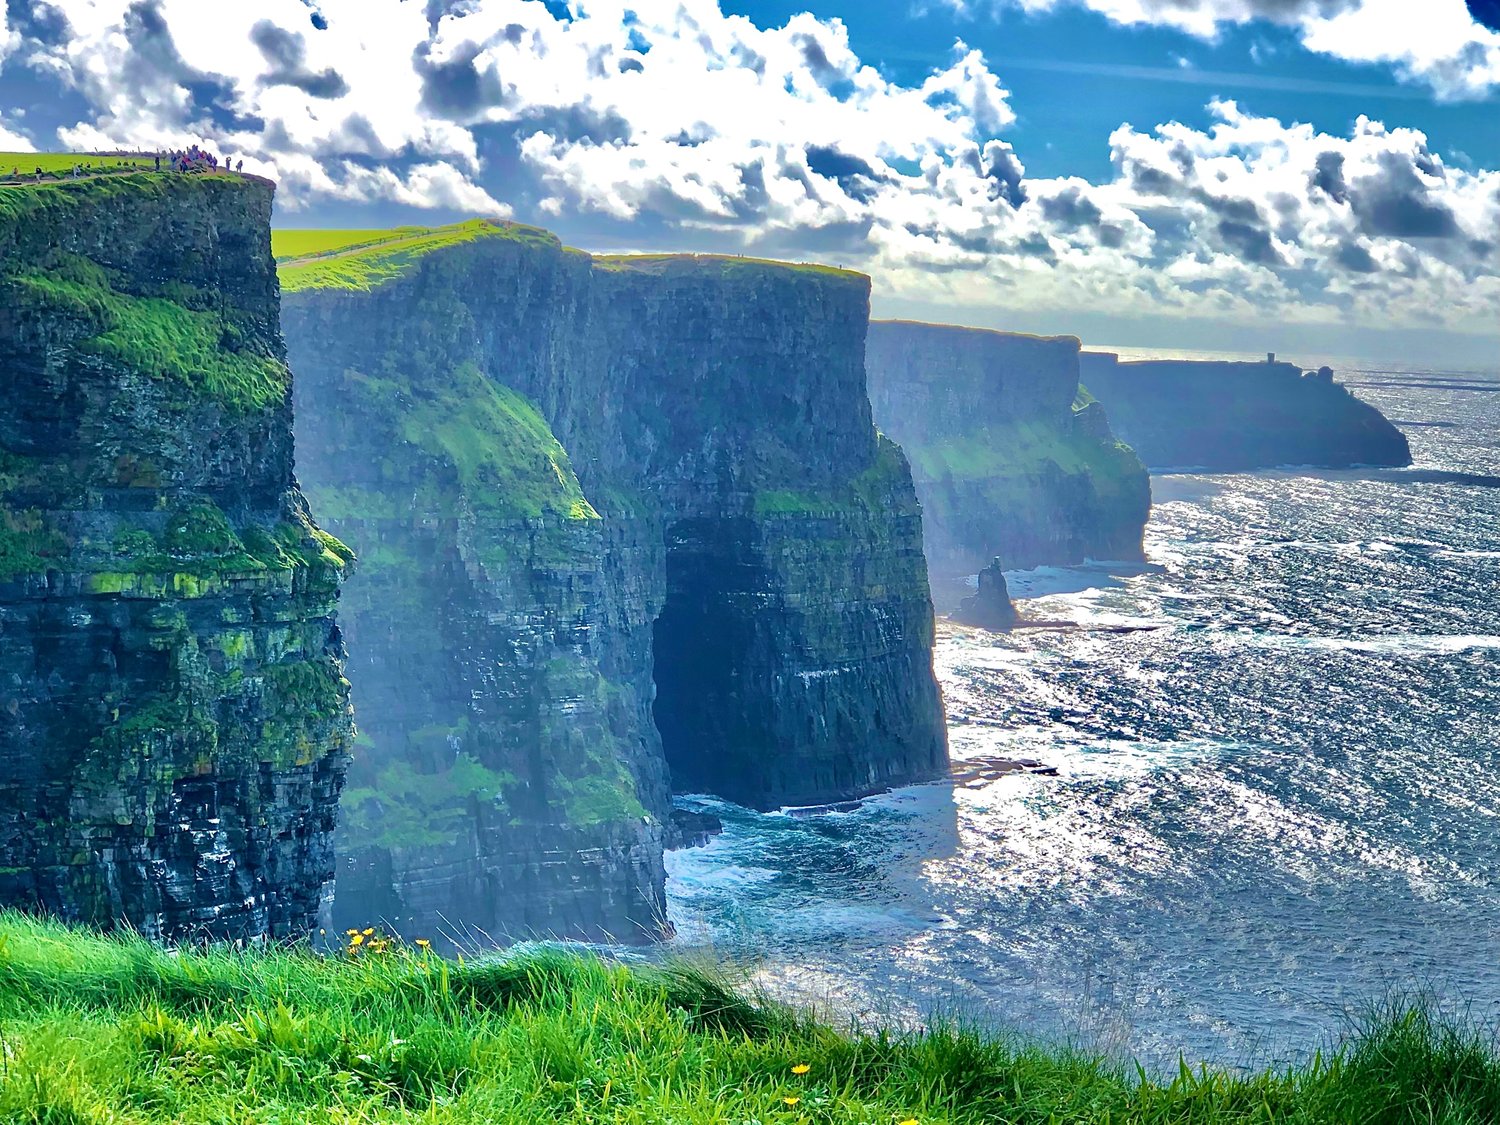 Stamboom Aanstellen fiets Cliffs of Moher, The Ring of Kerry, Skellig Michael, Killarney & More -  Ireland — REmotiFIRE by EatWanderExplore